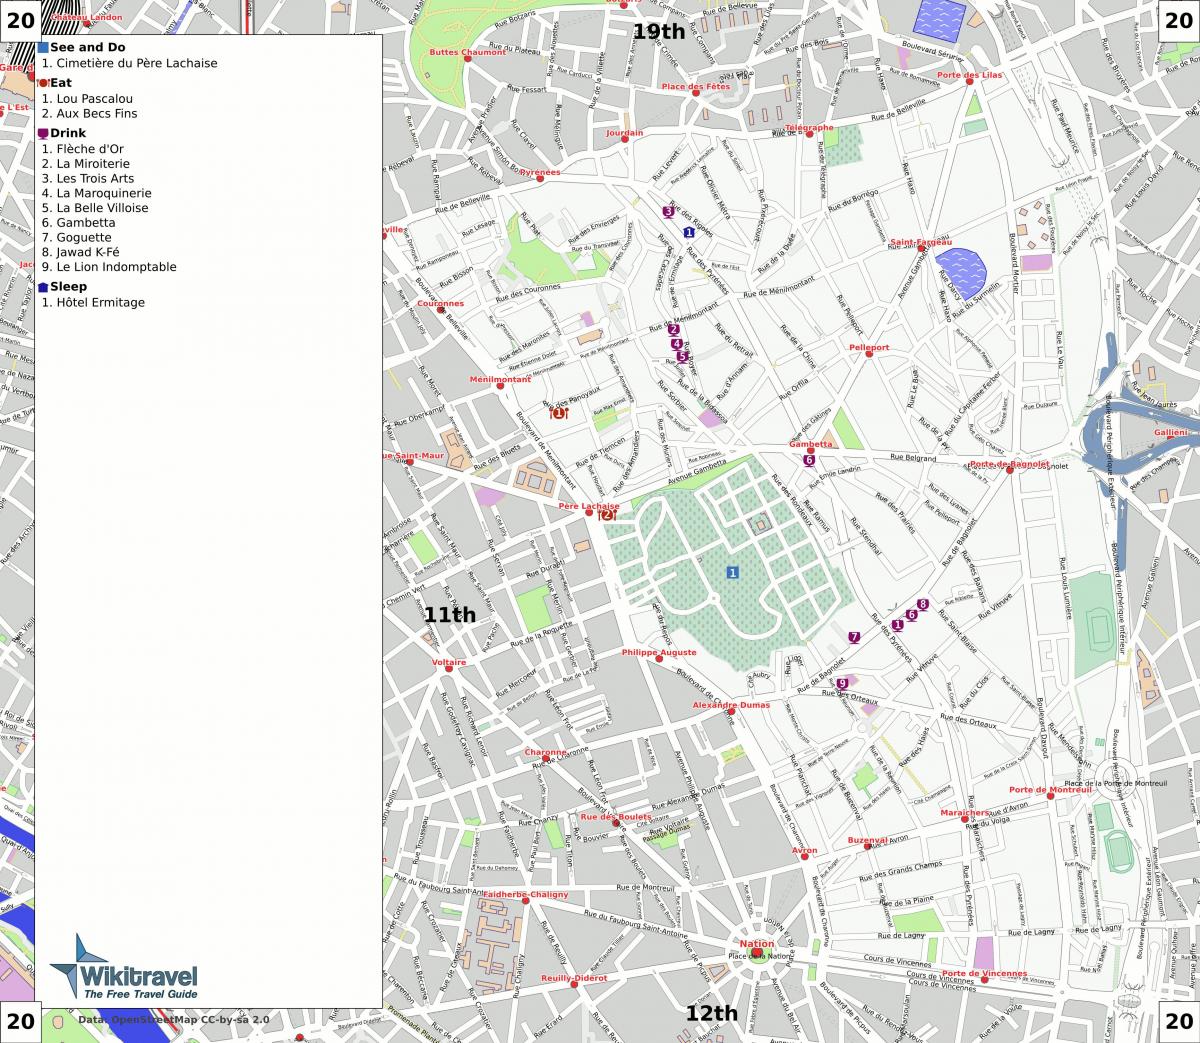 Map of 20th arrondissement of Paris